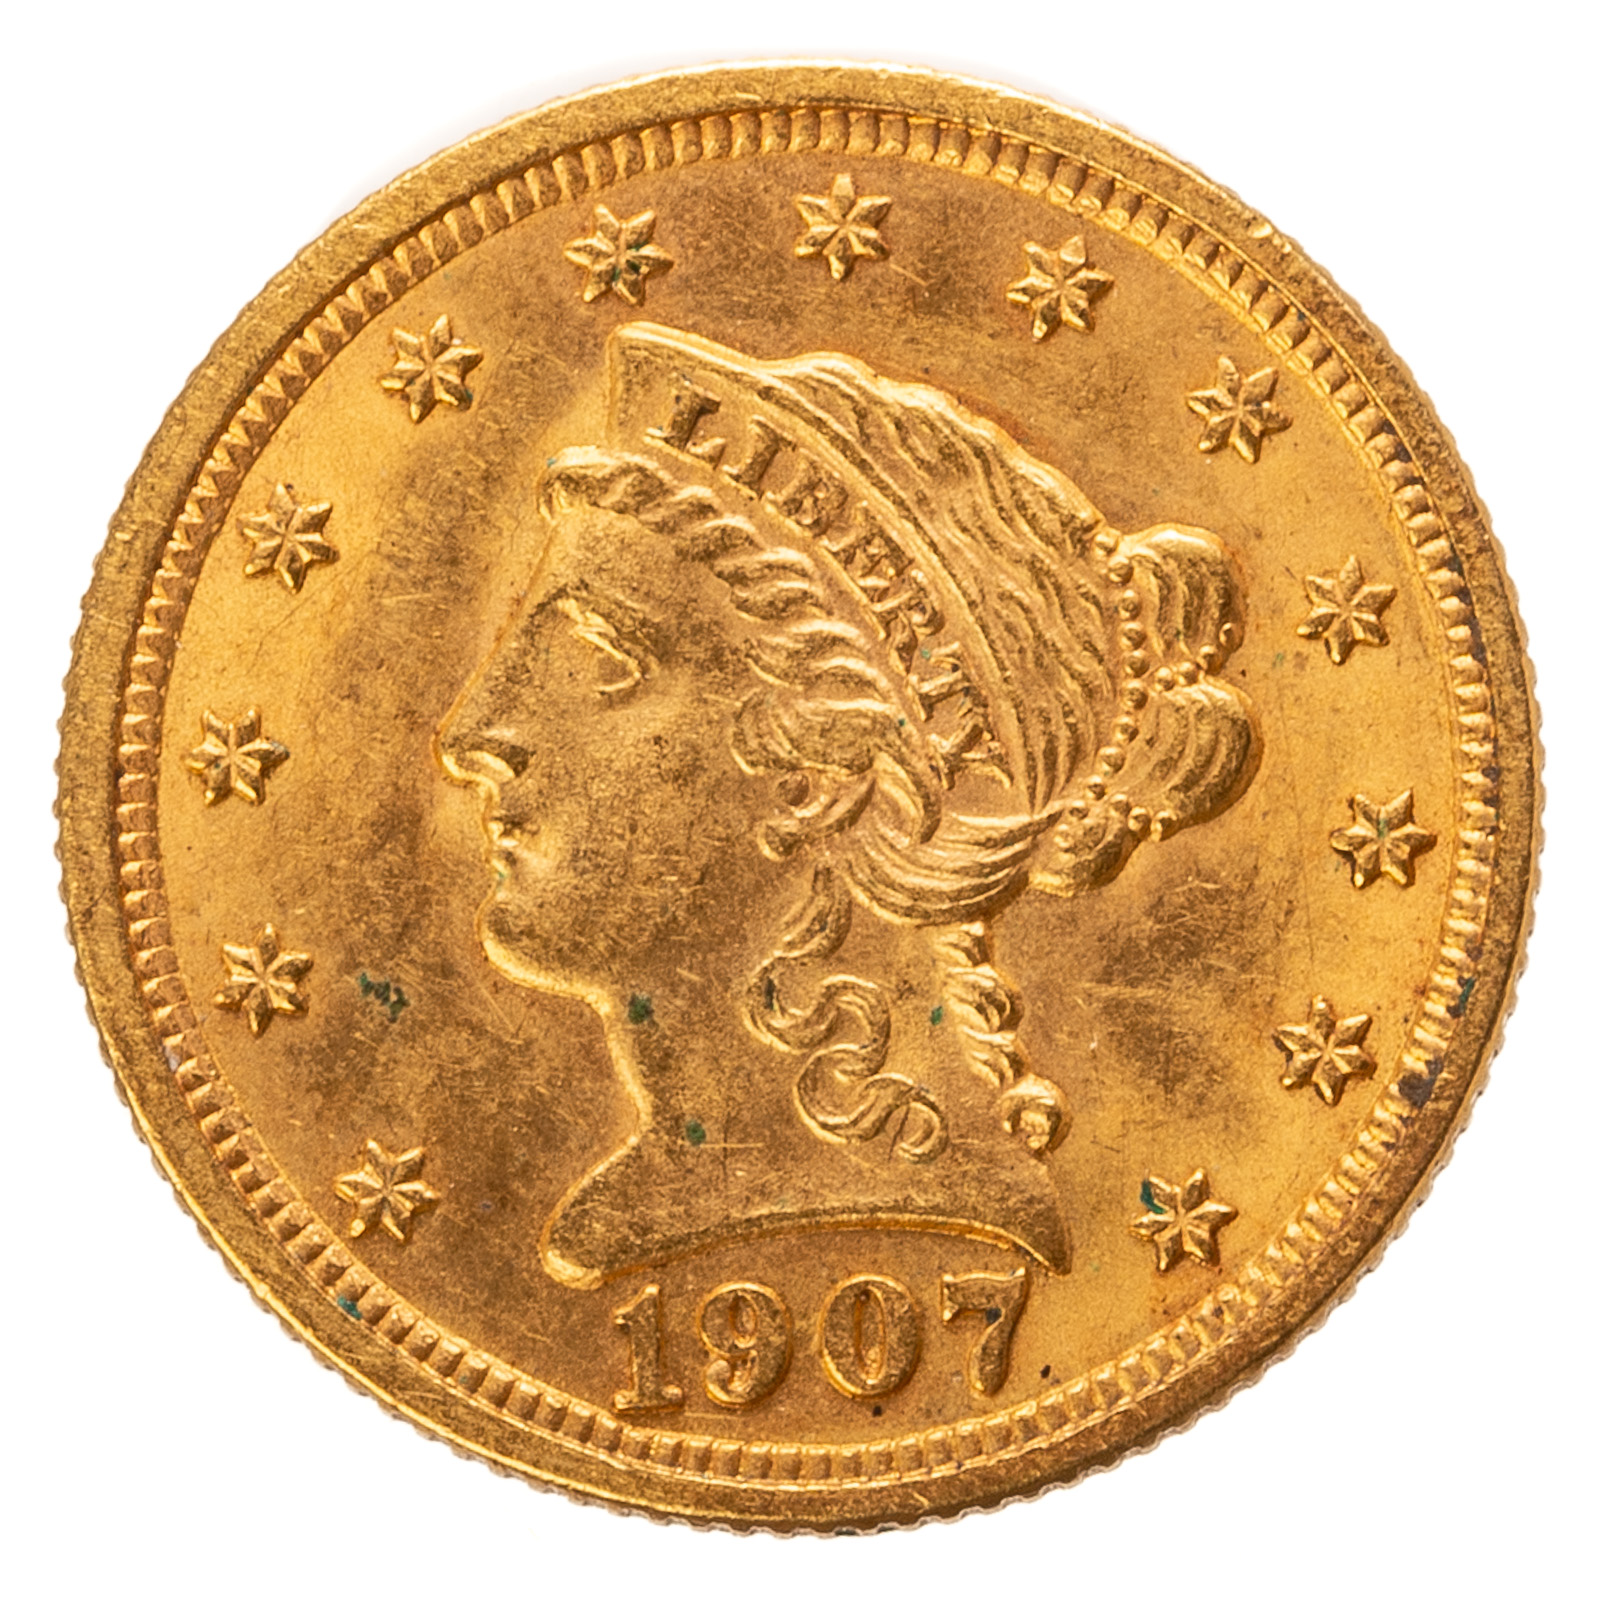 1907 2 50 LIBERTY GOLD QUARTER 2ea04a